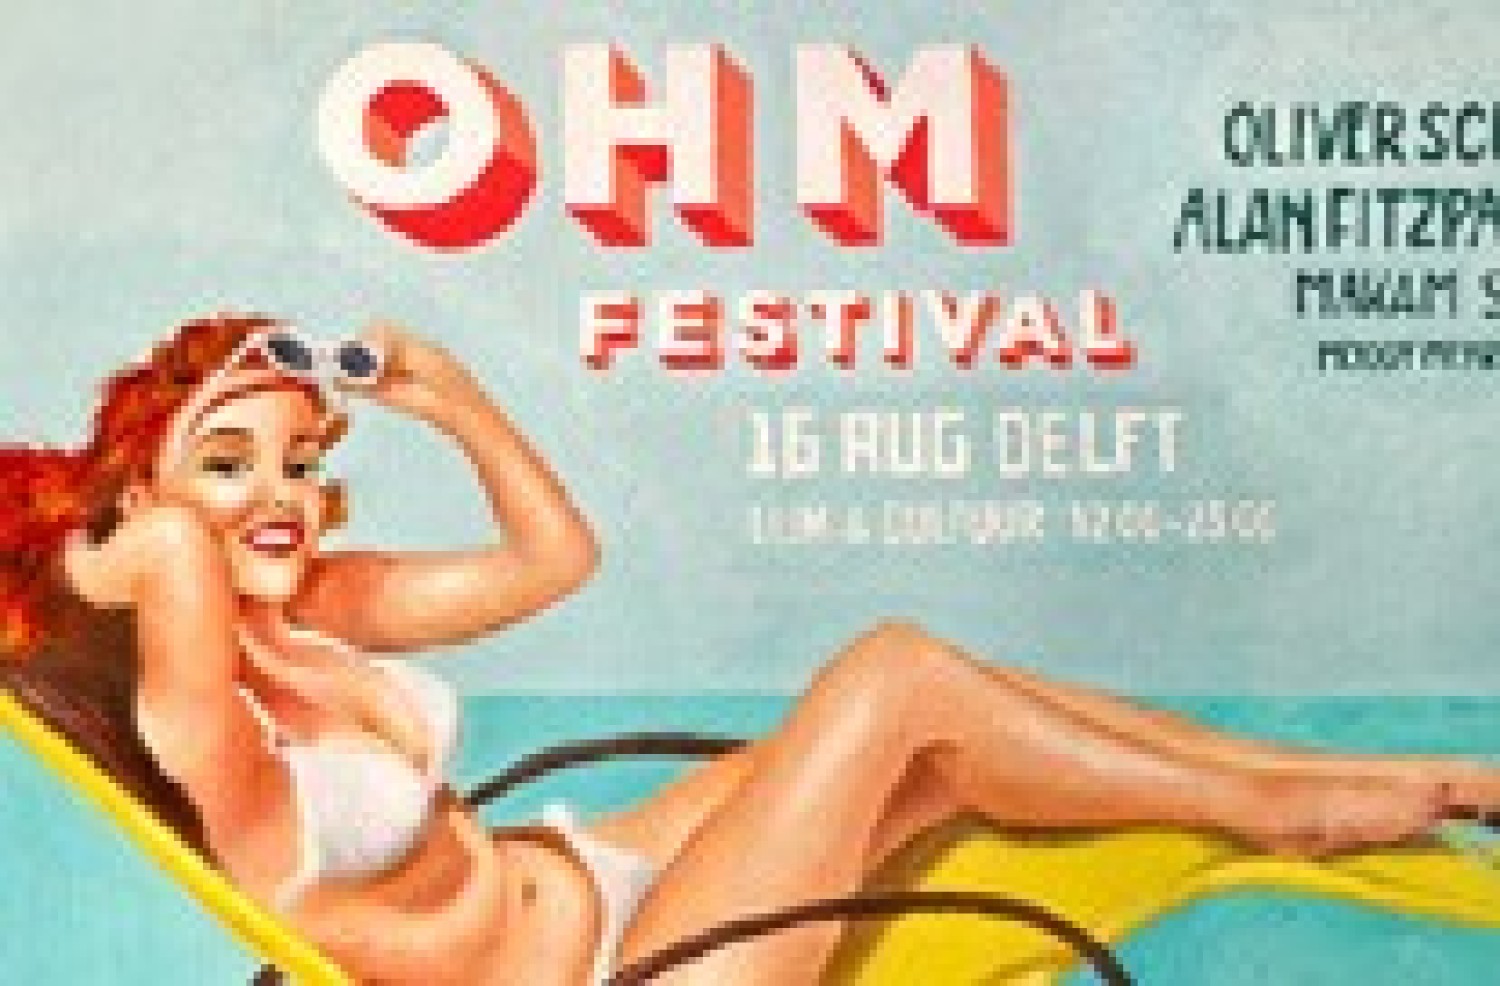 Party report: Ohm Festival 2014, Delft (16-08-2014)